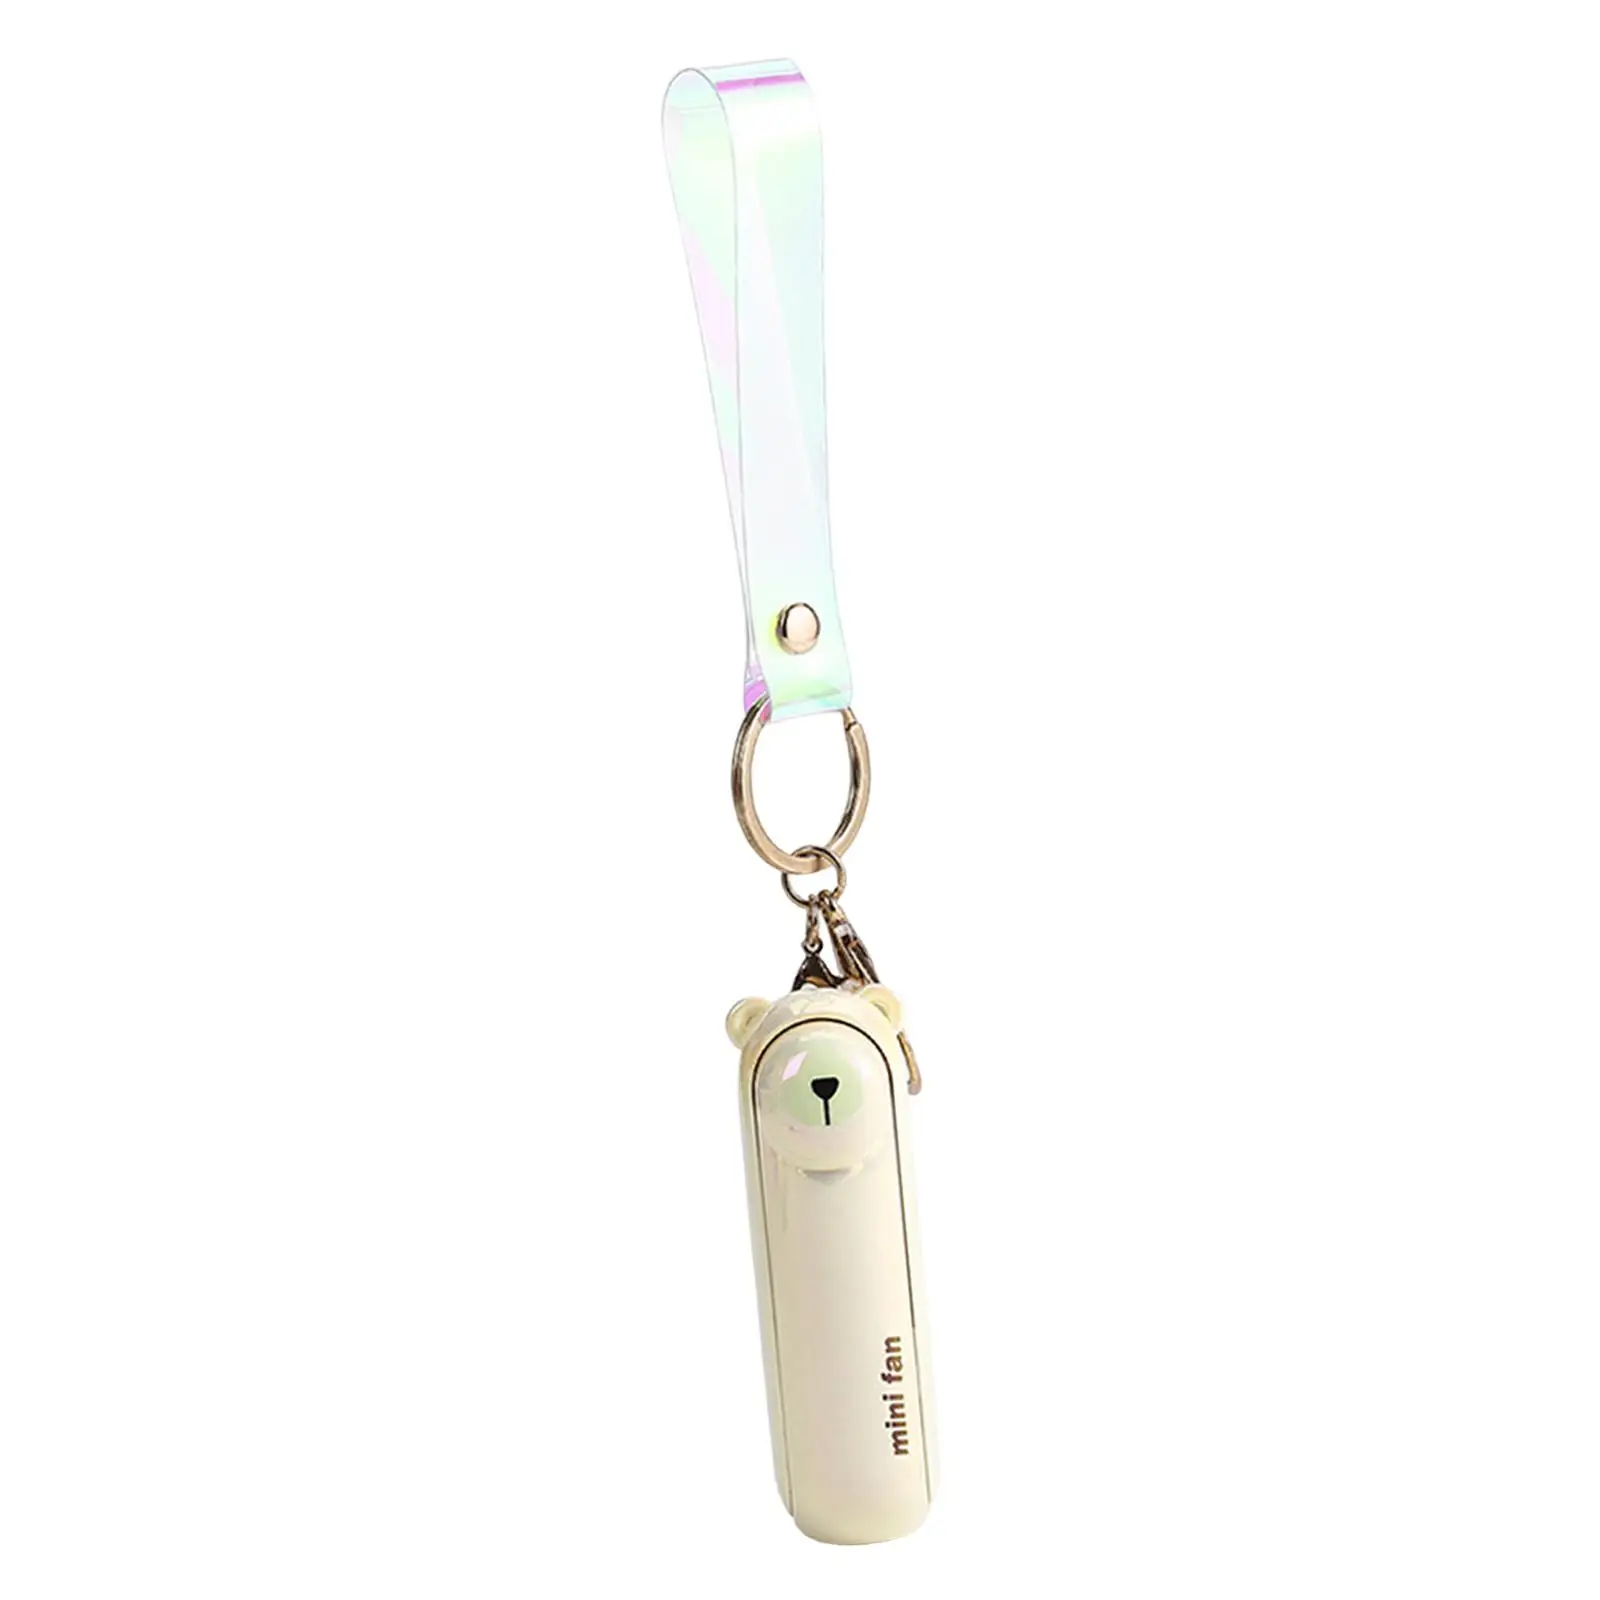 Keychain Fan Mini Fan 3 Speeds with Light USB Fan Small Pocket Fan Folding Personal Fan for Office Indoor Outdoor Sports